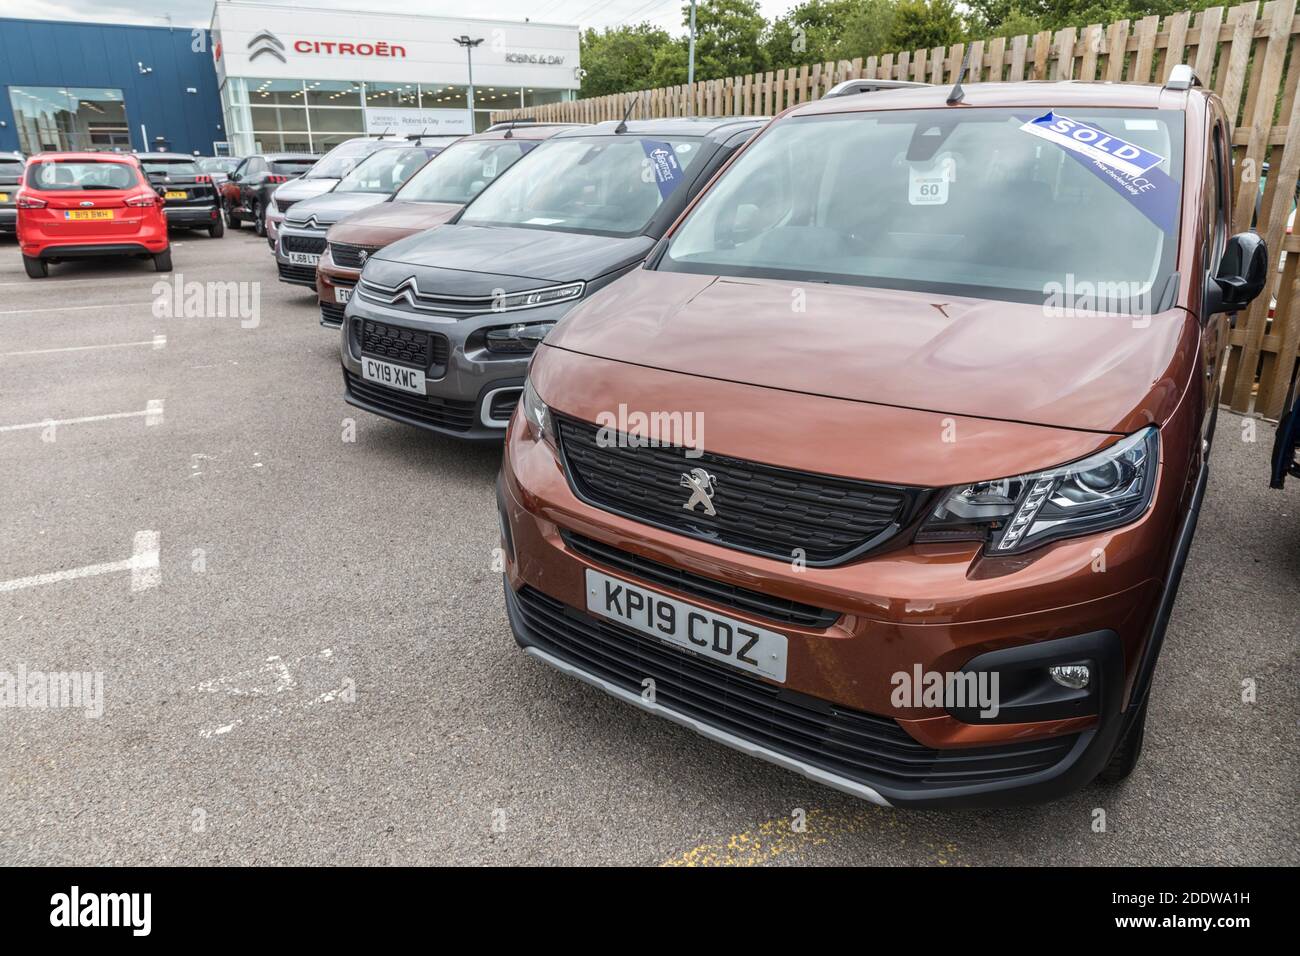 Peugeot voitures de tir sur piste avec enseigne vendue, Newport, pays de Galles, Royaume-Uni Banque D'Images